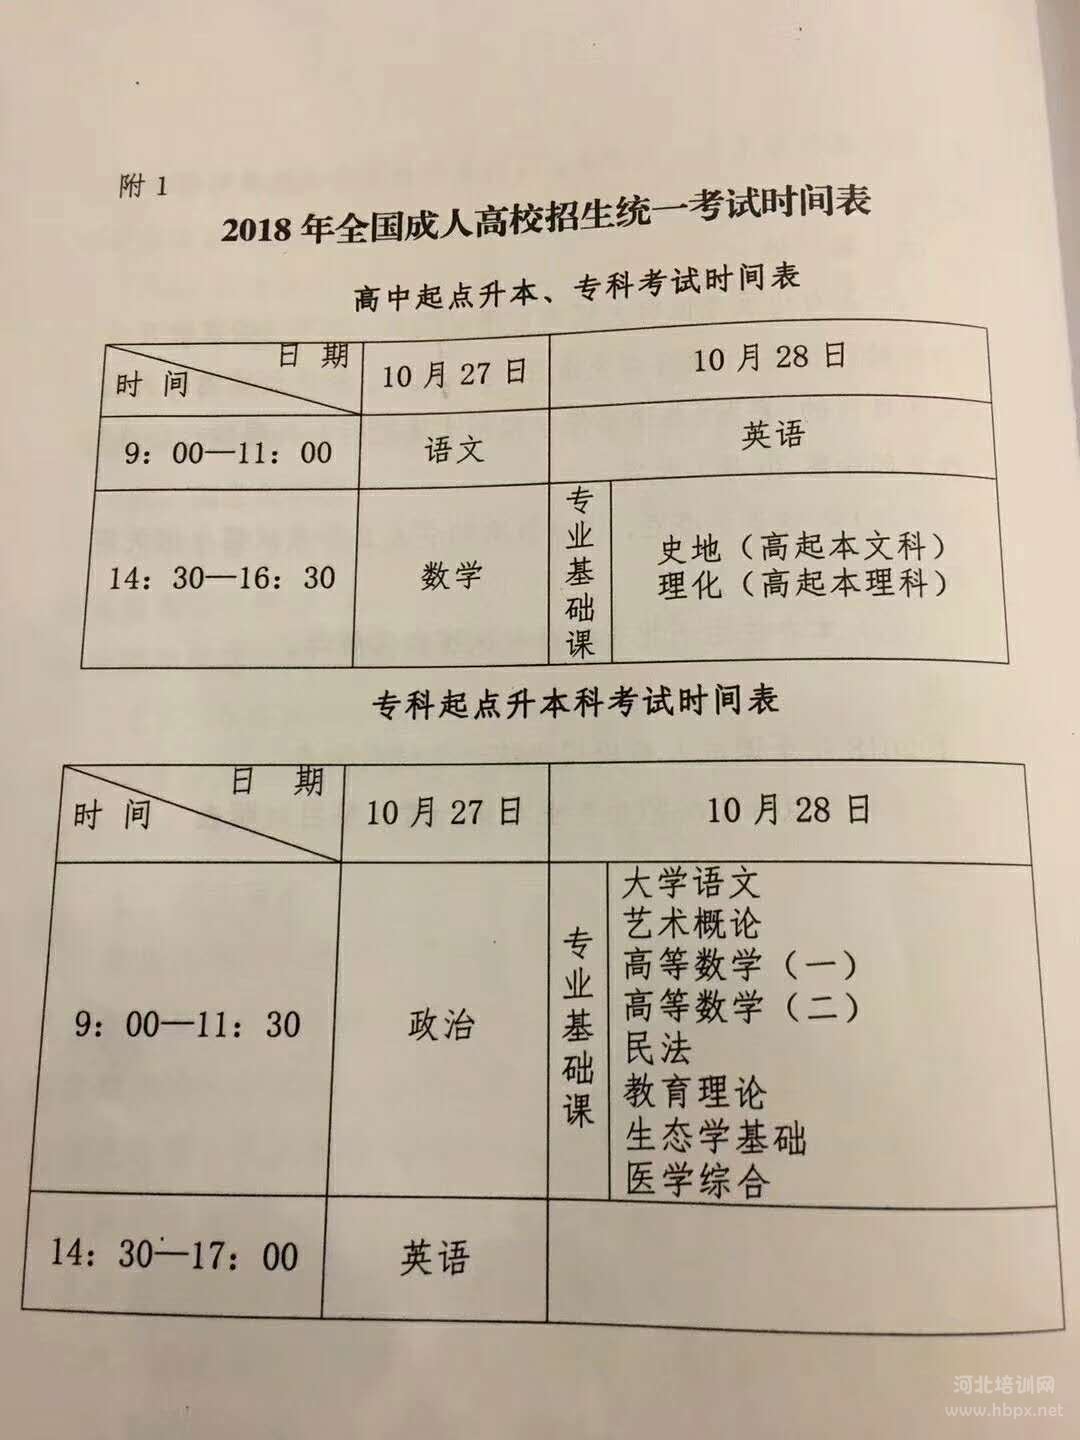 2018年河北省成人高考考试时间